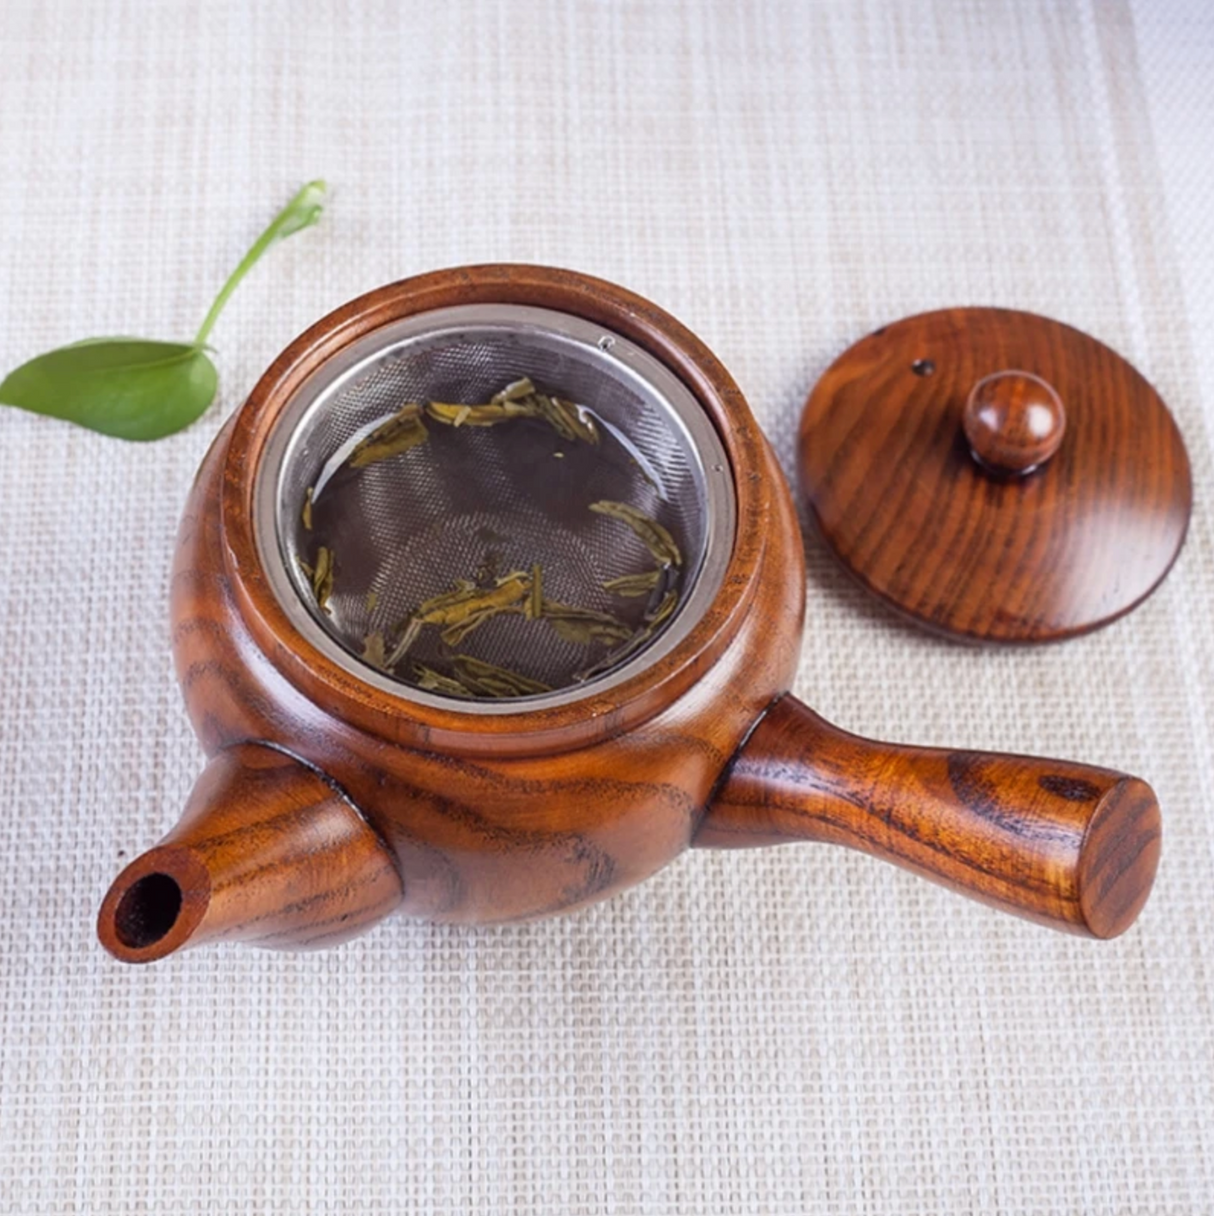 Japanese wooden kyusu teapot